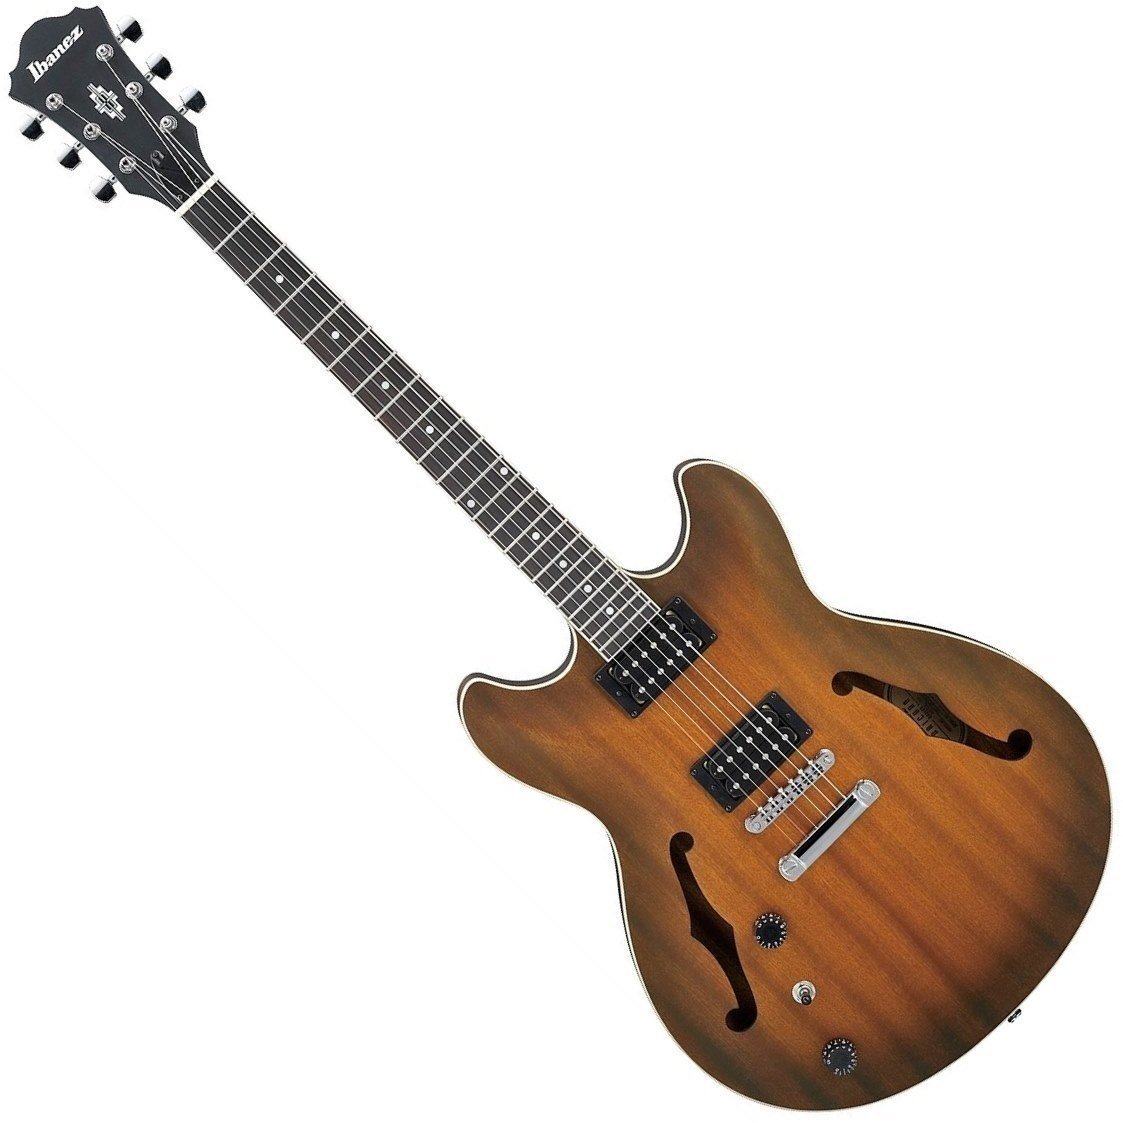 Semiakustická kytara Ibanez AS53L-TF Tobacco Flat